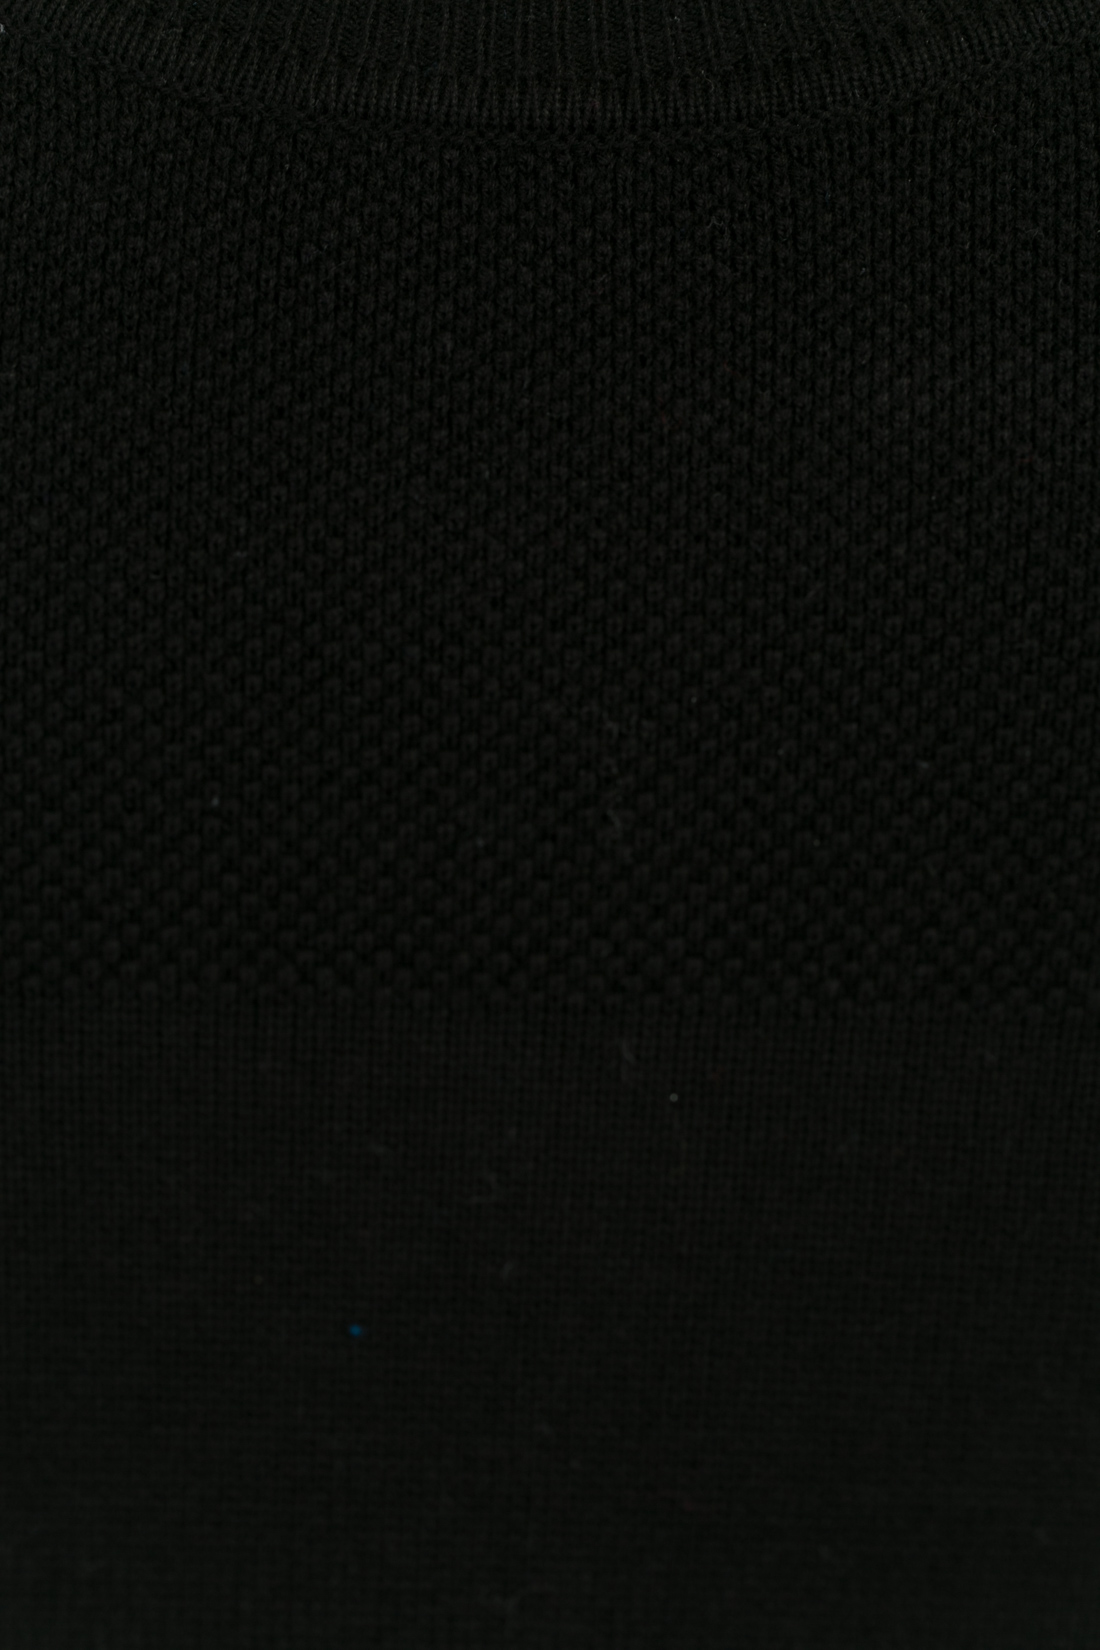 Джемпер с рельефной кокеткой (арт. baon B637013), размер S, цвет черный Джемпер с рельефной кокеткой (арт. baon B637013) - фото 4